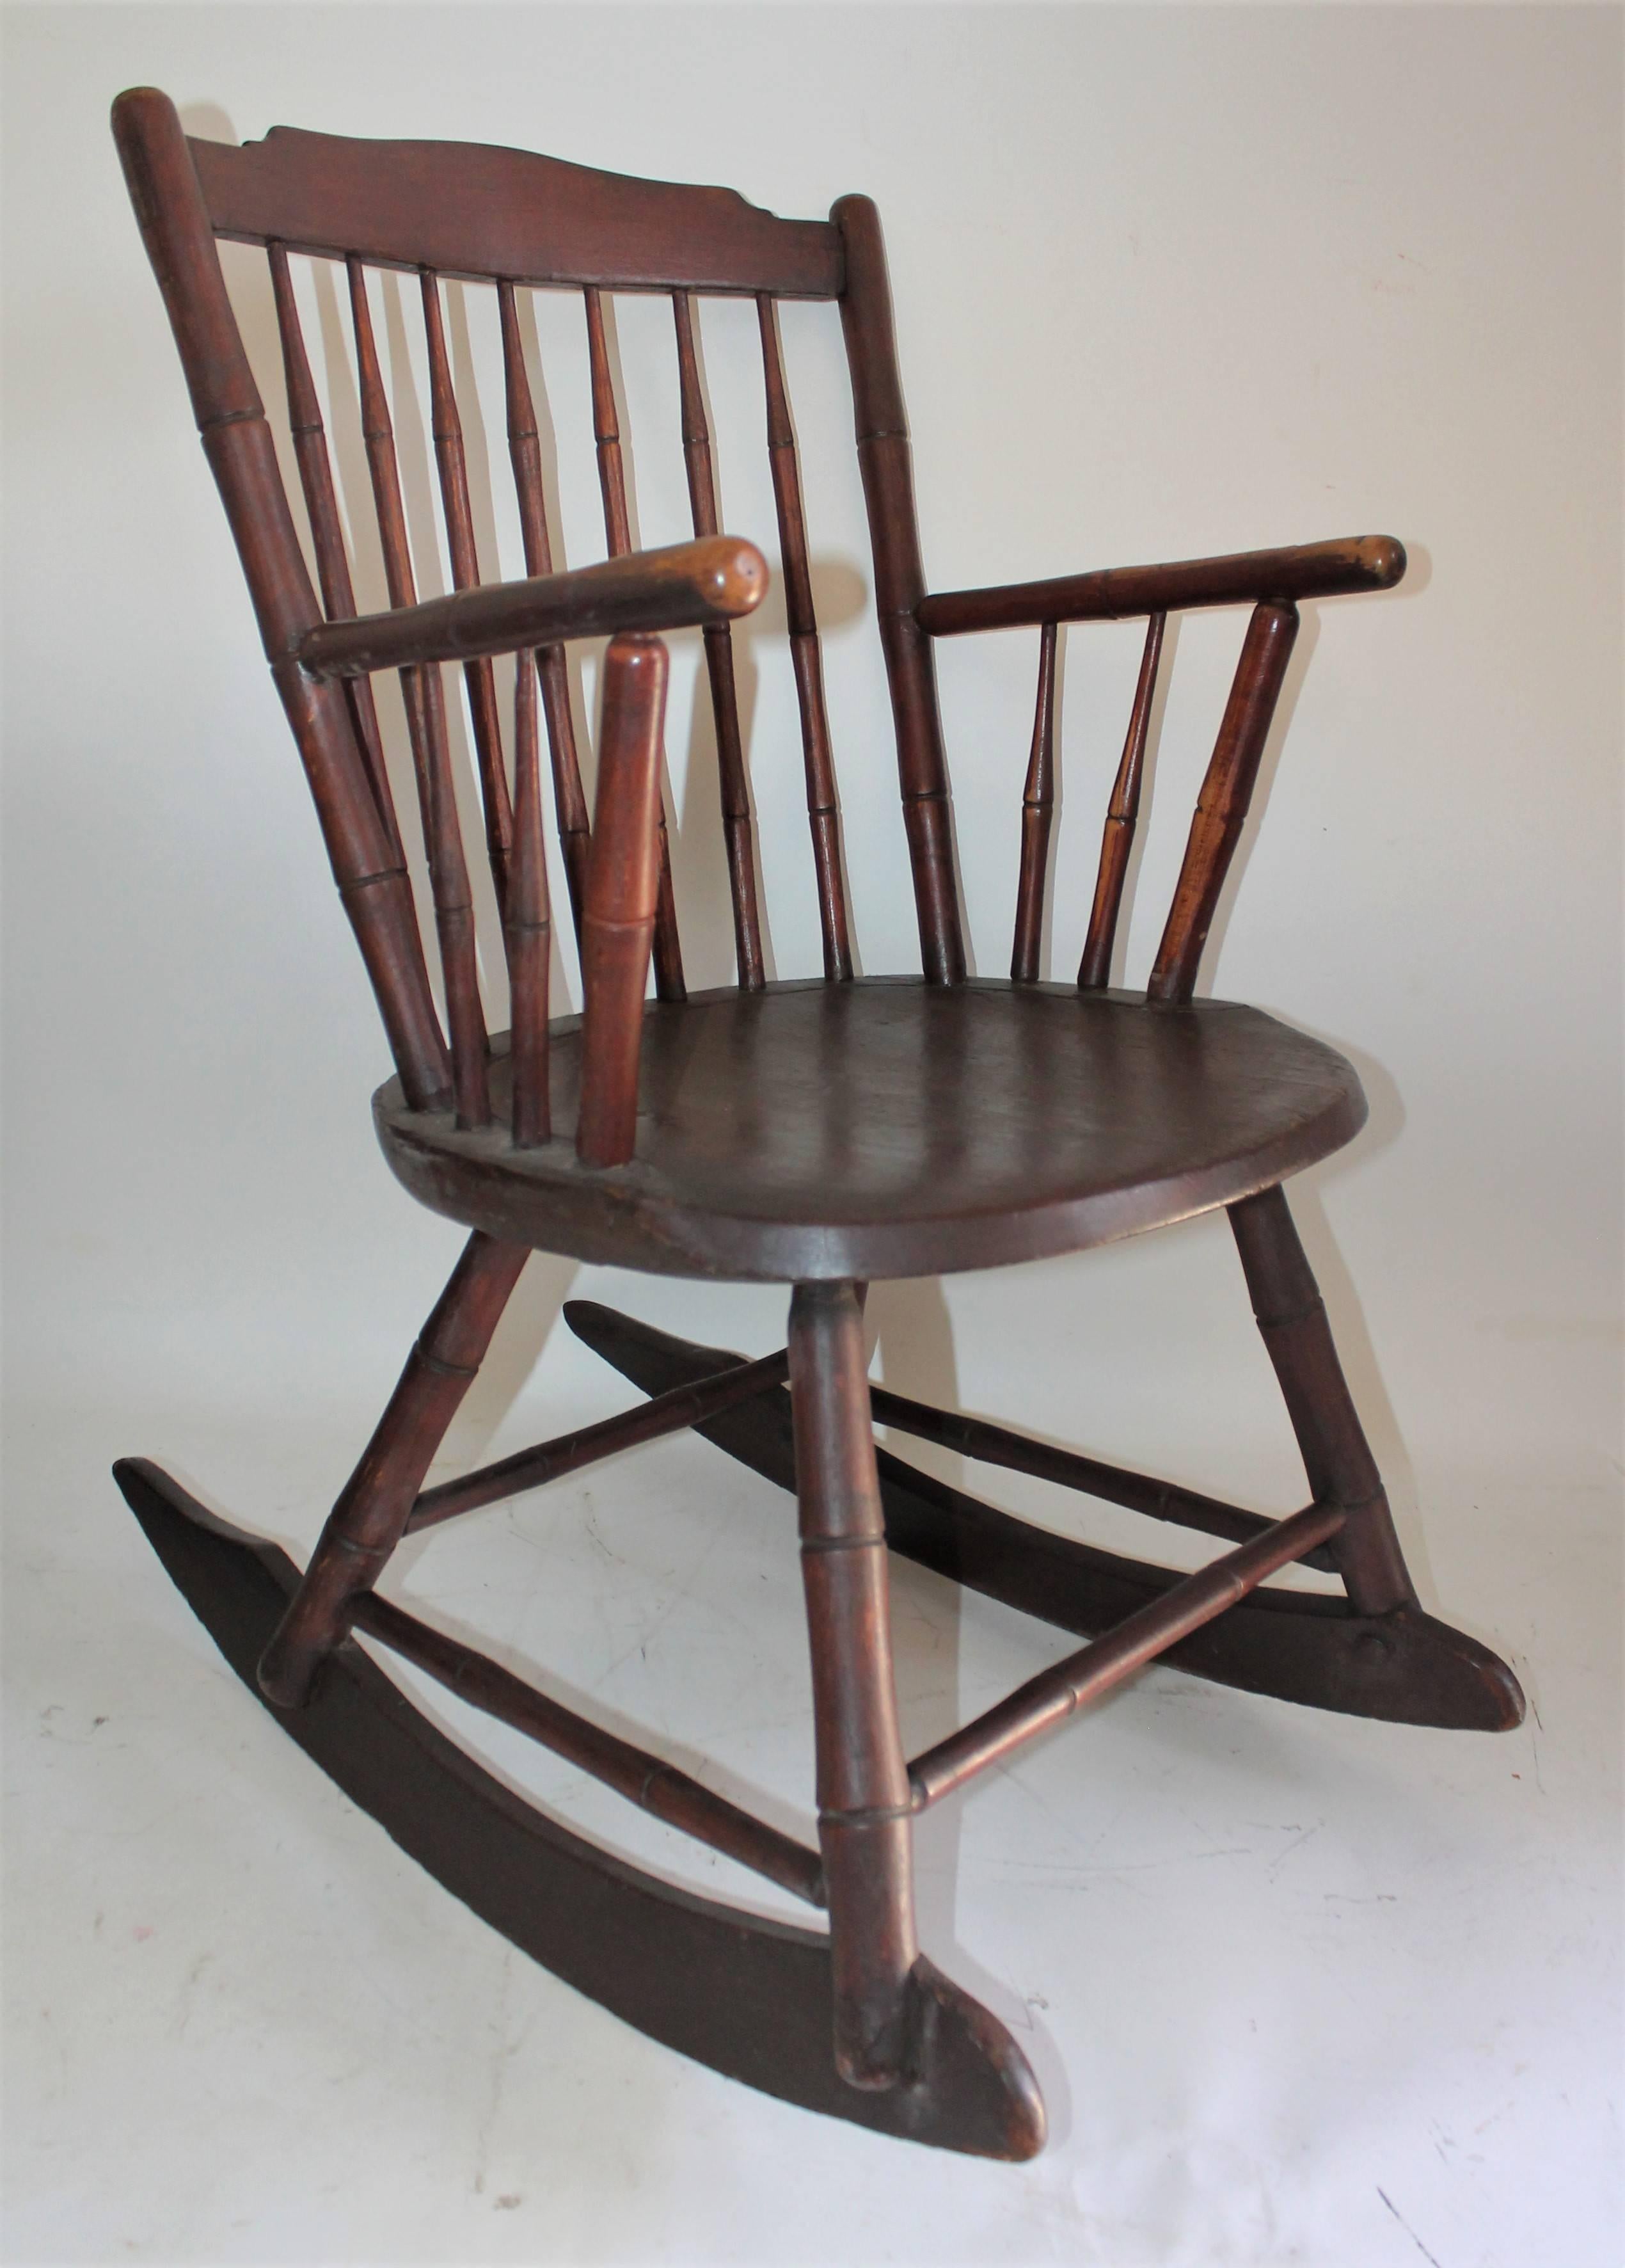 Windsor-Schaukelstuhl aus dem 19. Jahrhundert in gutem Zustand. Dies ist ein sehr stabiler Schaukelstuhl. Kleine alte Reparaturen. Er hat eine breite Sitzfläche und Rückenlehne. Dieser Schaukelstuhl hat eine wunderbare gealterte Patina.